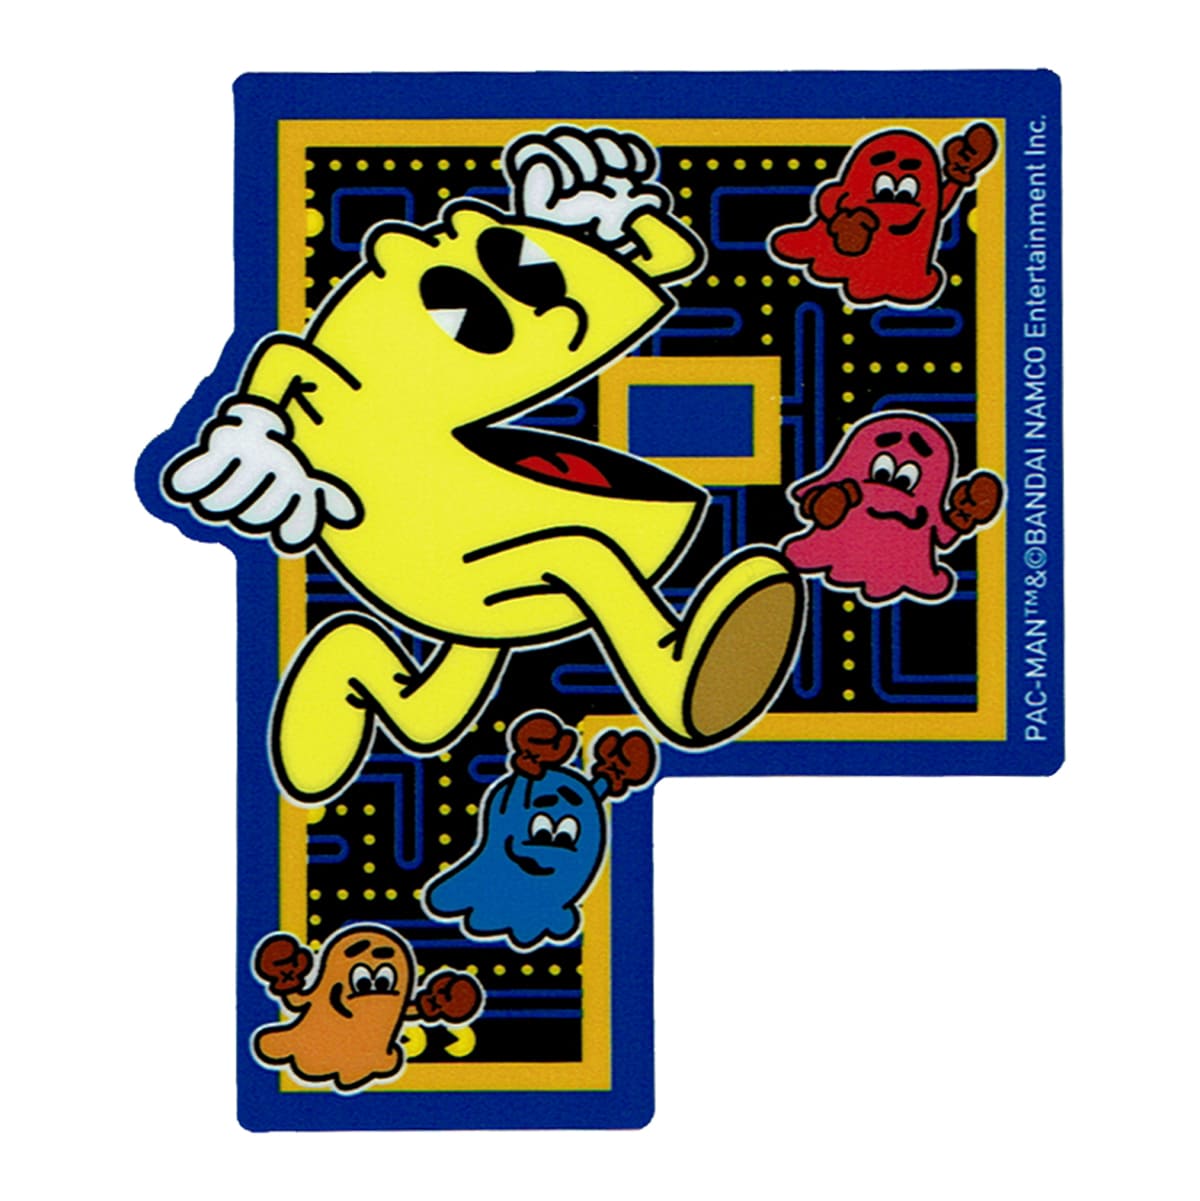 楽天市場 ステッカー シール おしゃれ カワイイ パックマン イエロー レトロ イラスト ダイカット ゲーム キャラクター Pac Man ライセンス商品 Lcs1066 カスタマイズ オリジナル Sss ワッペン通販 ワッペンストア